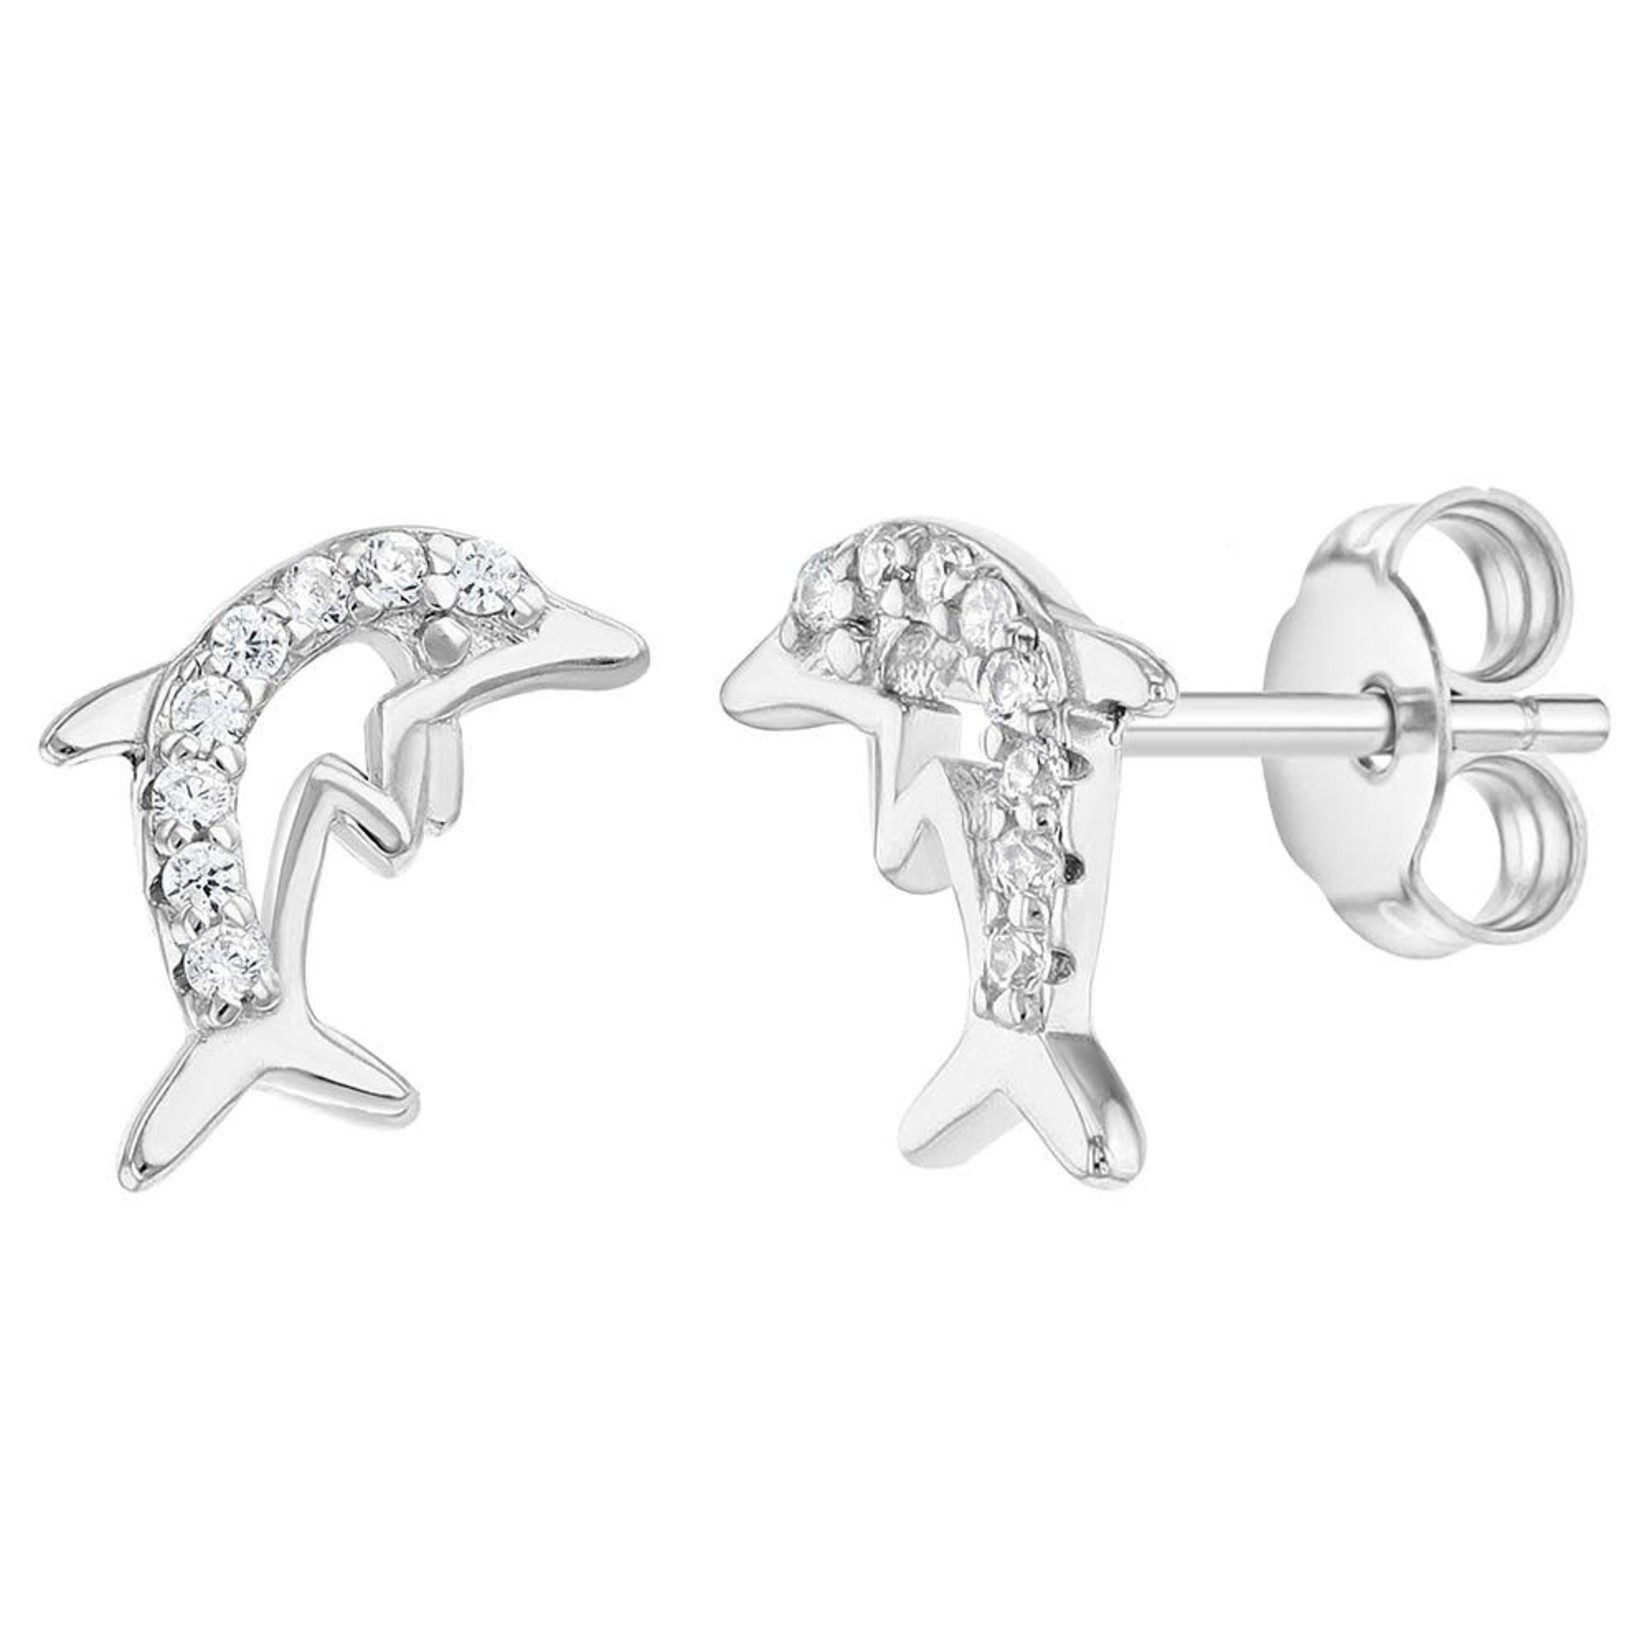 In Season Jewelry 925 Sterling w/ clear CZ Dolphin Earrings